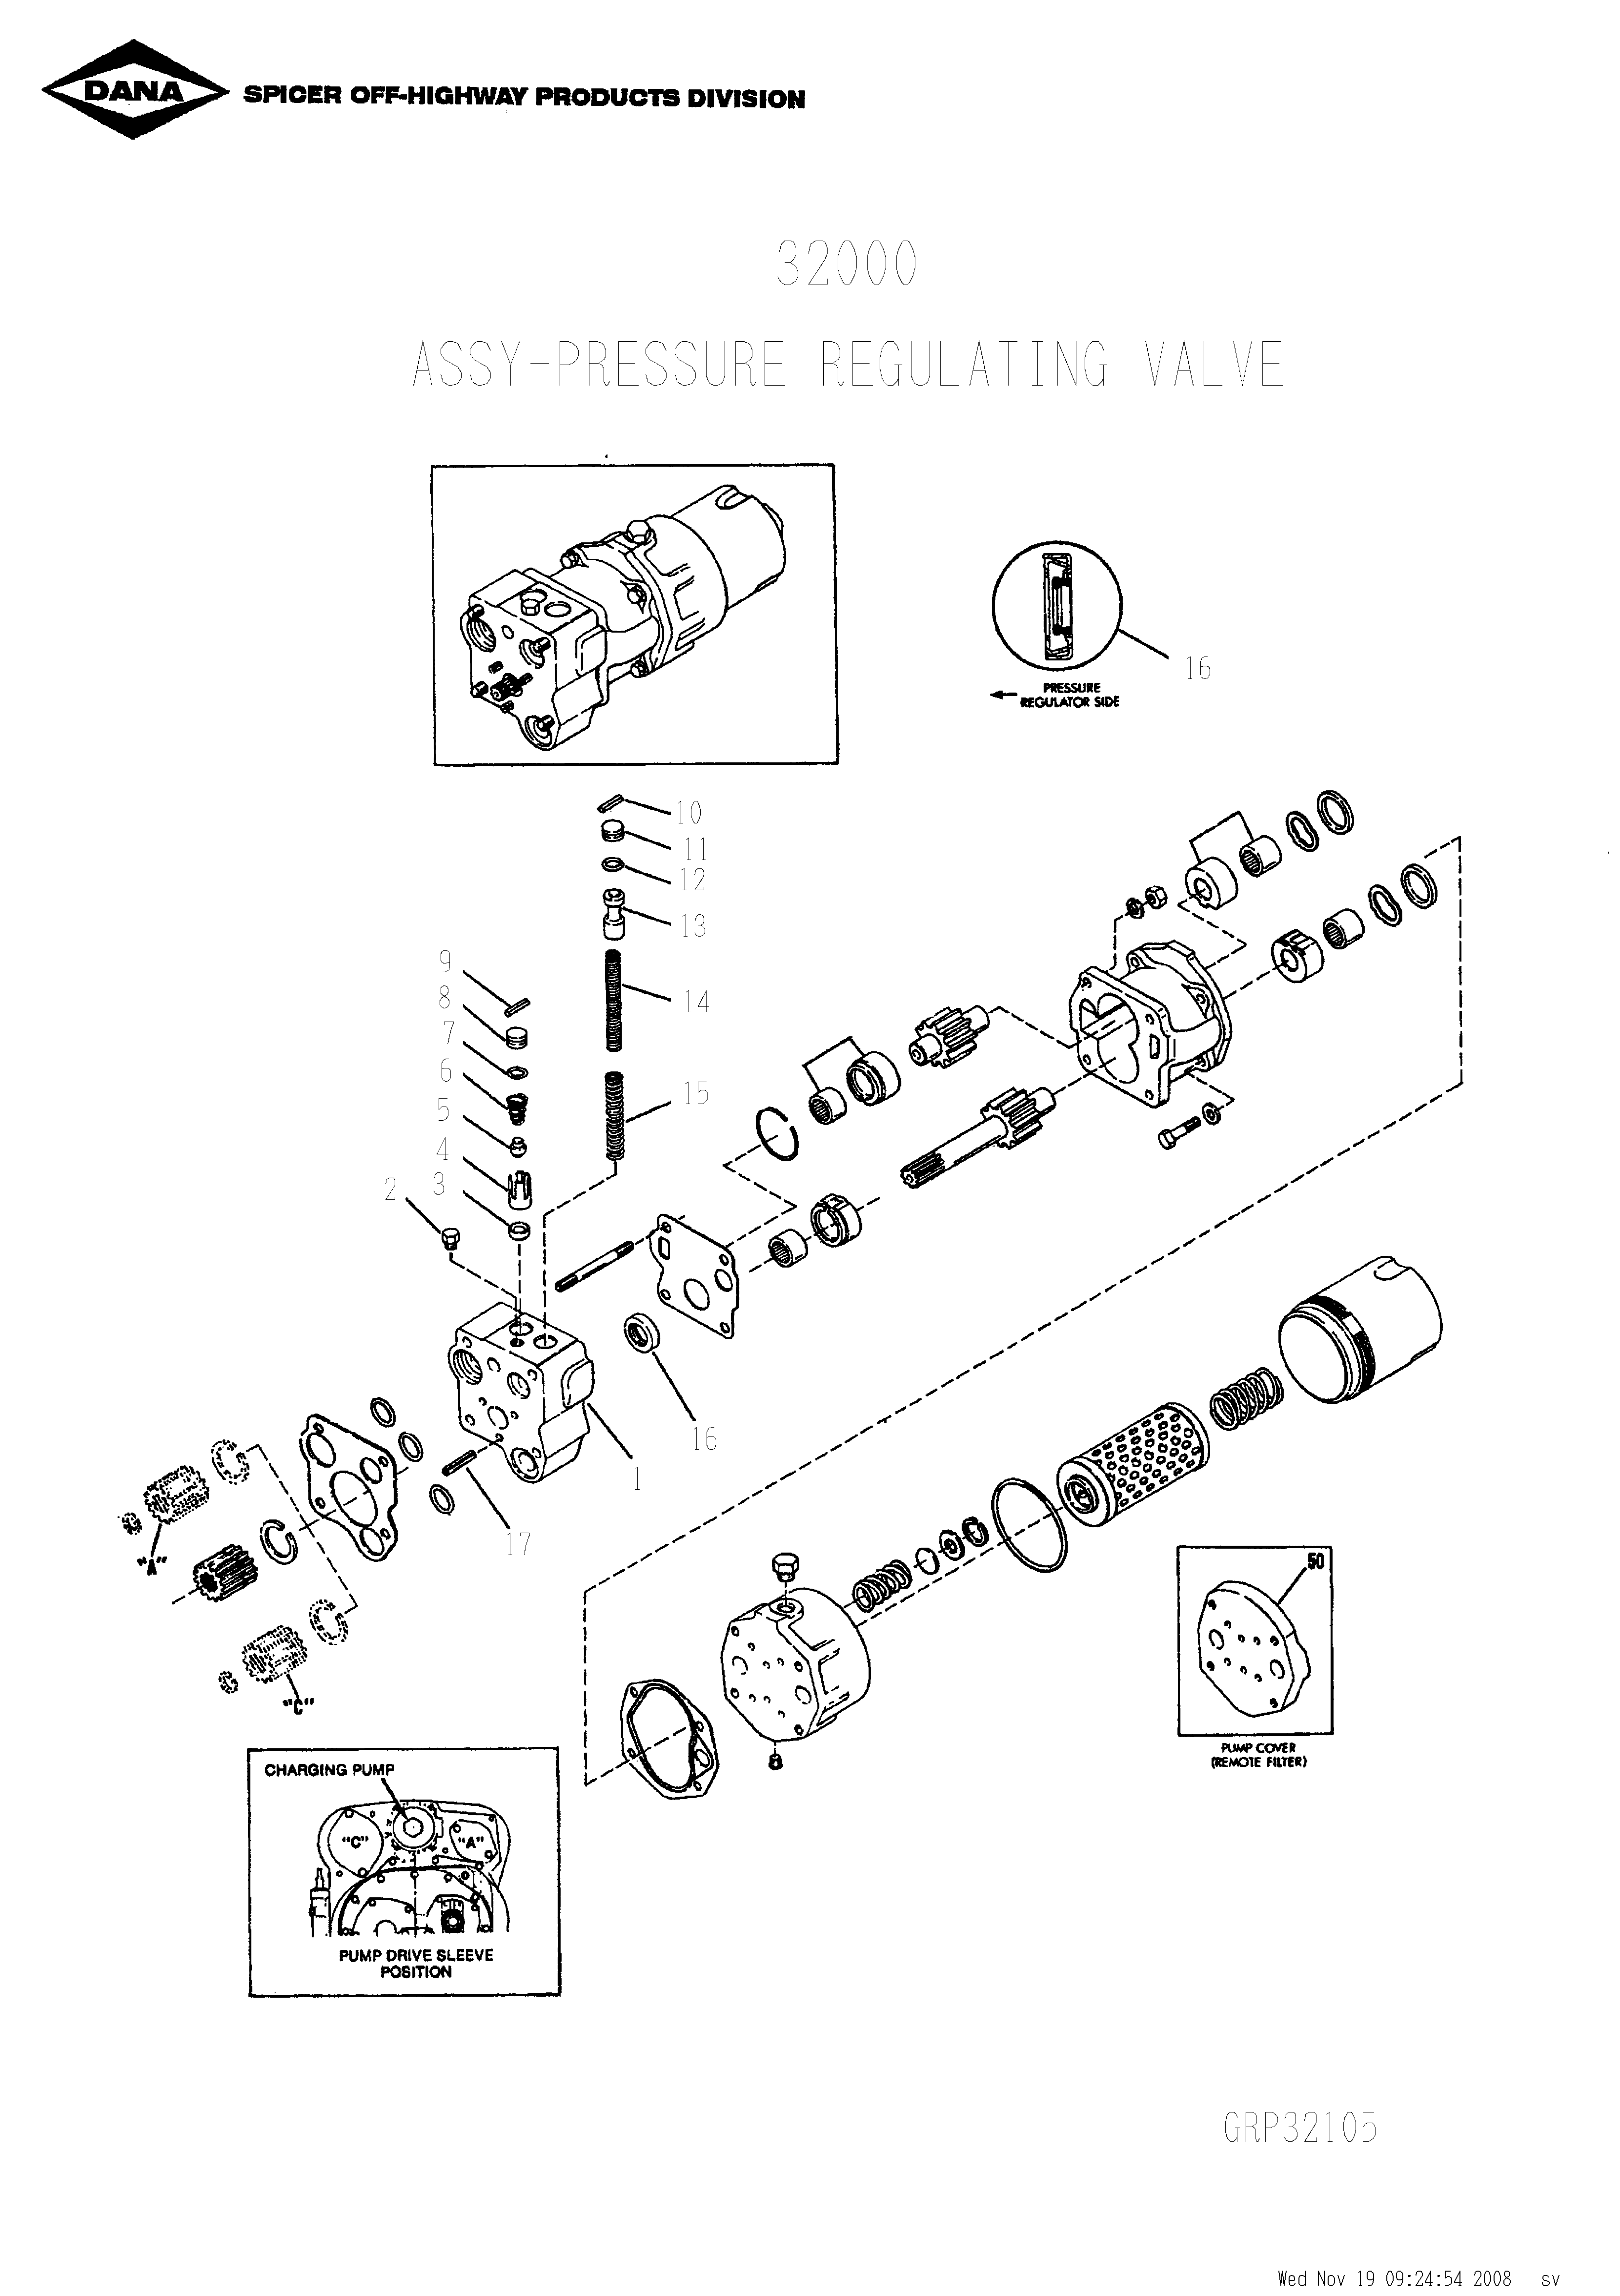 drawing for SCHOEMA, SCHOETTLER MASCHINENFABRIK K24.000053 - OIL SEAL